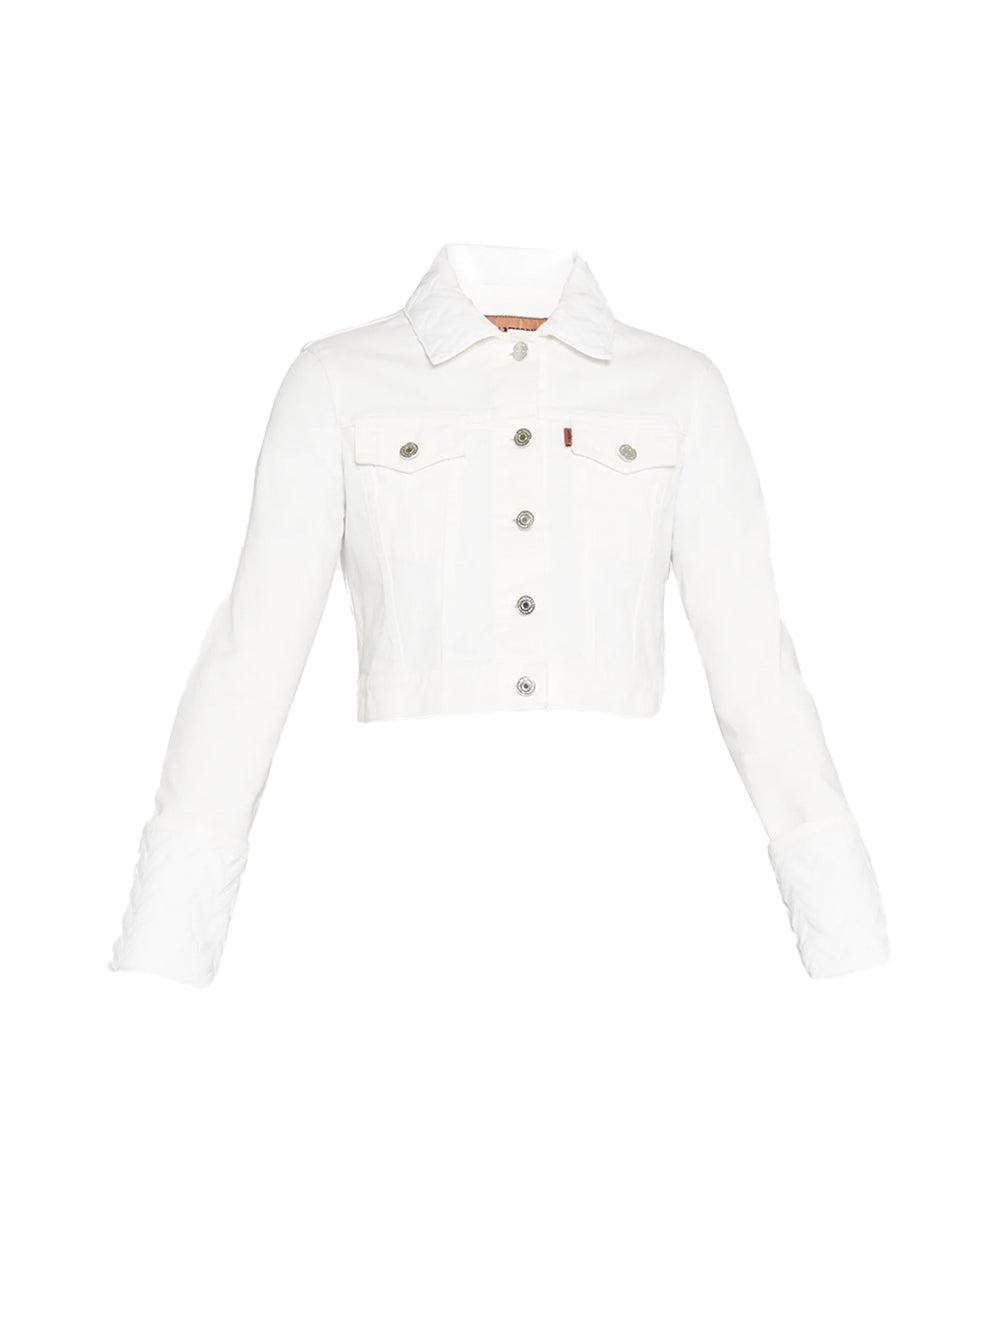 Missoni Crop Denim Jacket in White | Lyst